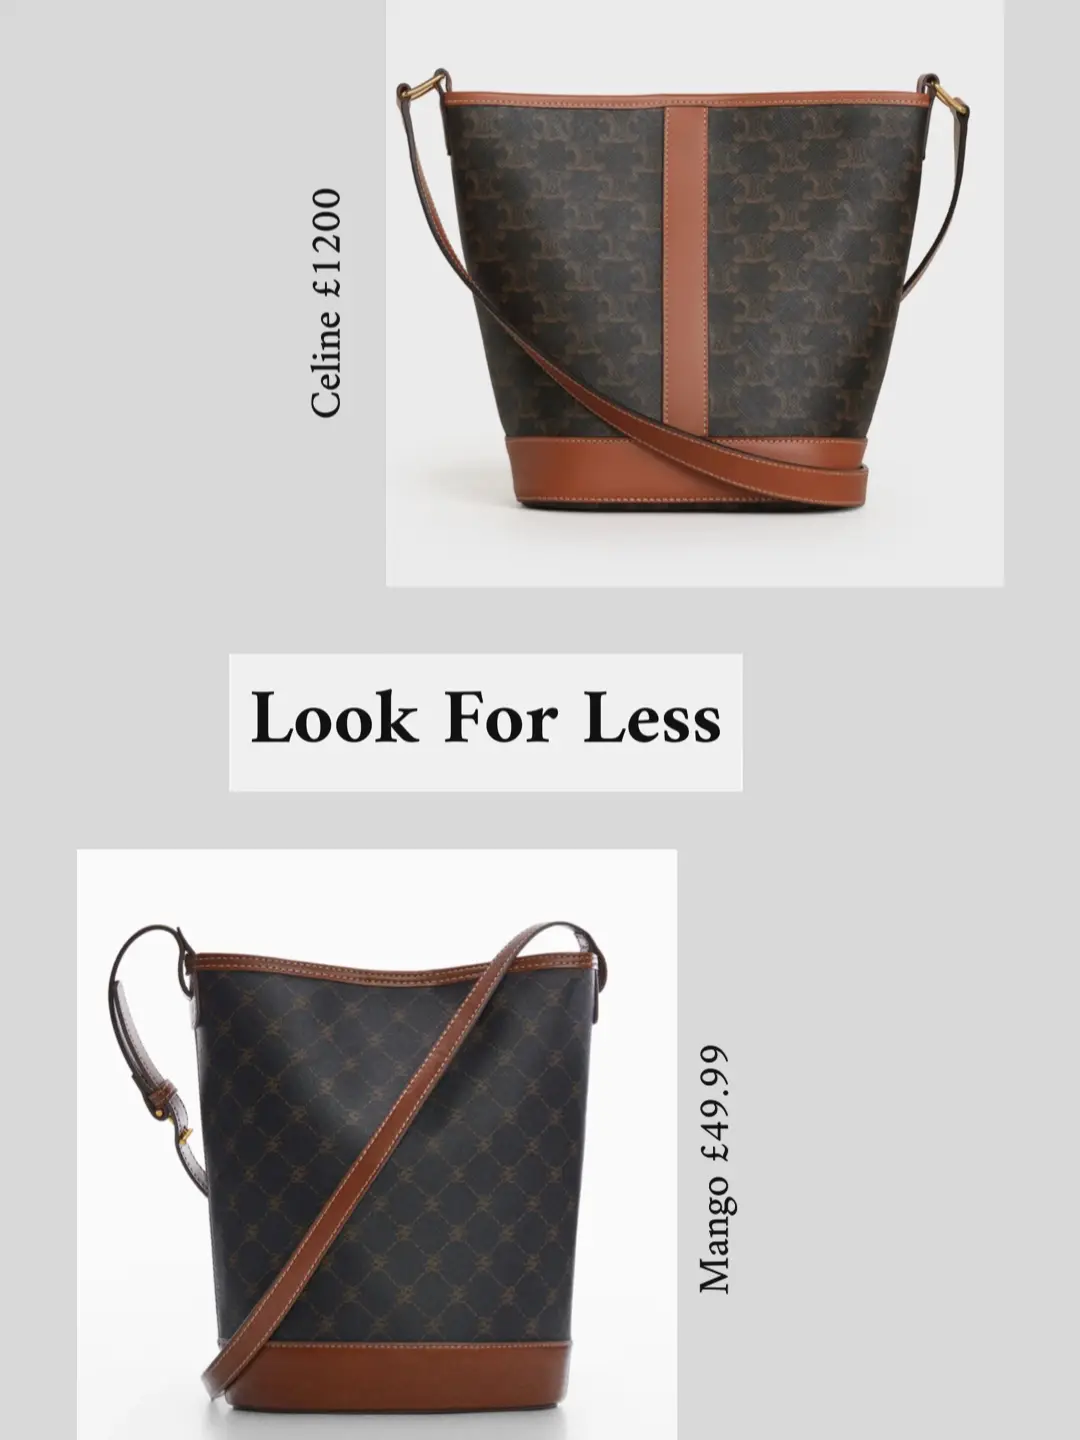 Mango's Louis Vuitton copycats are up for sale - LaiaMagazine